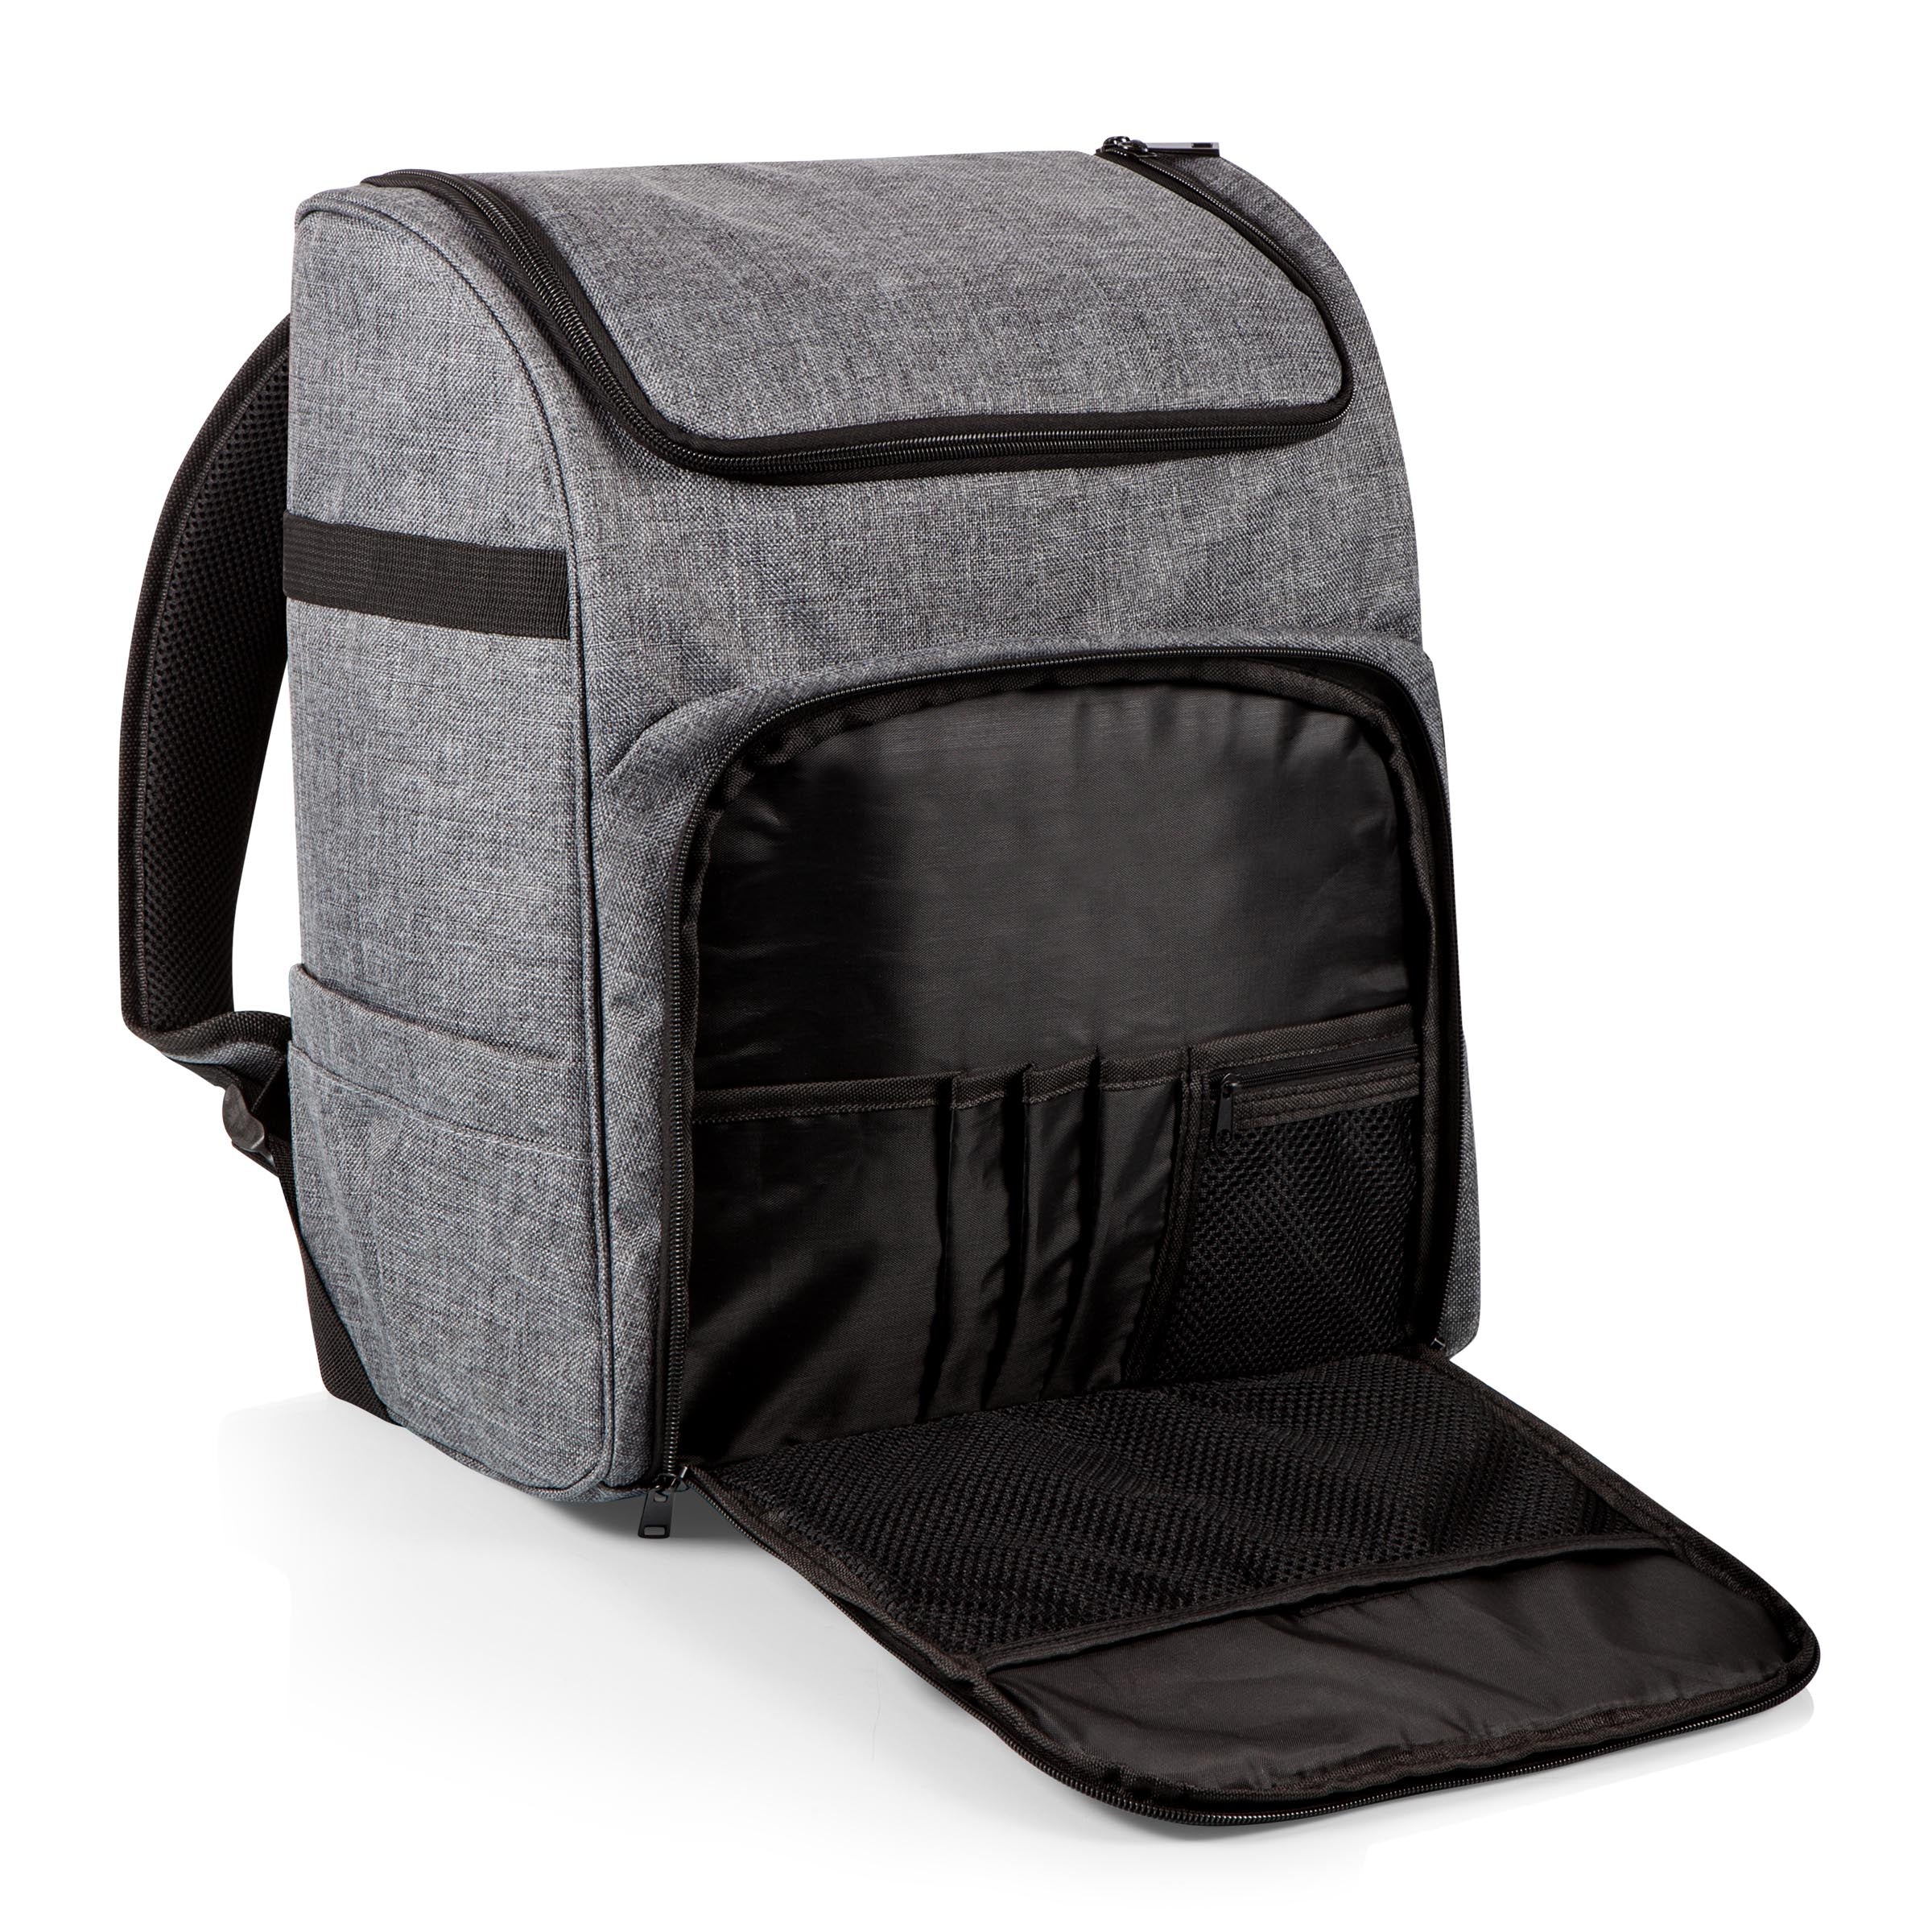 Commuter Travel Backpack Cooler